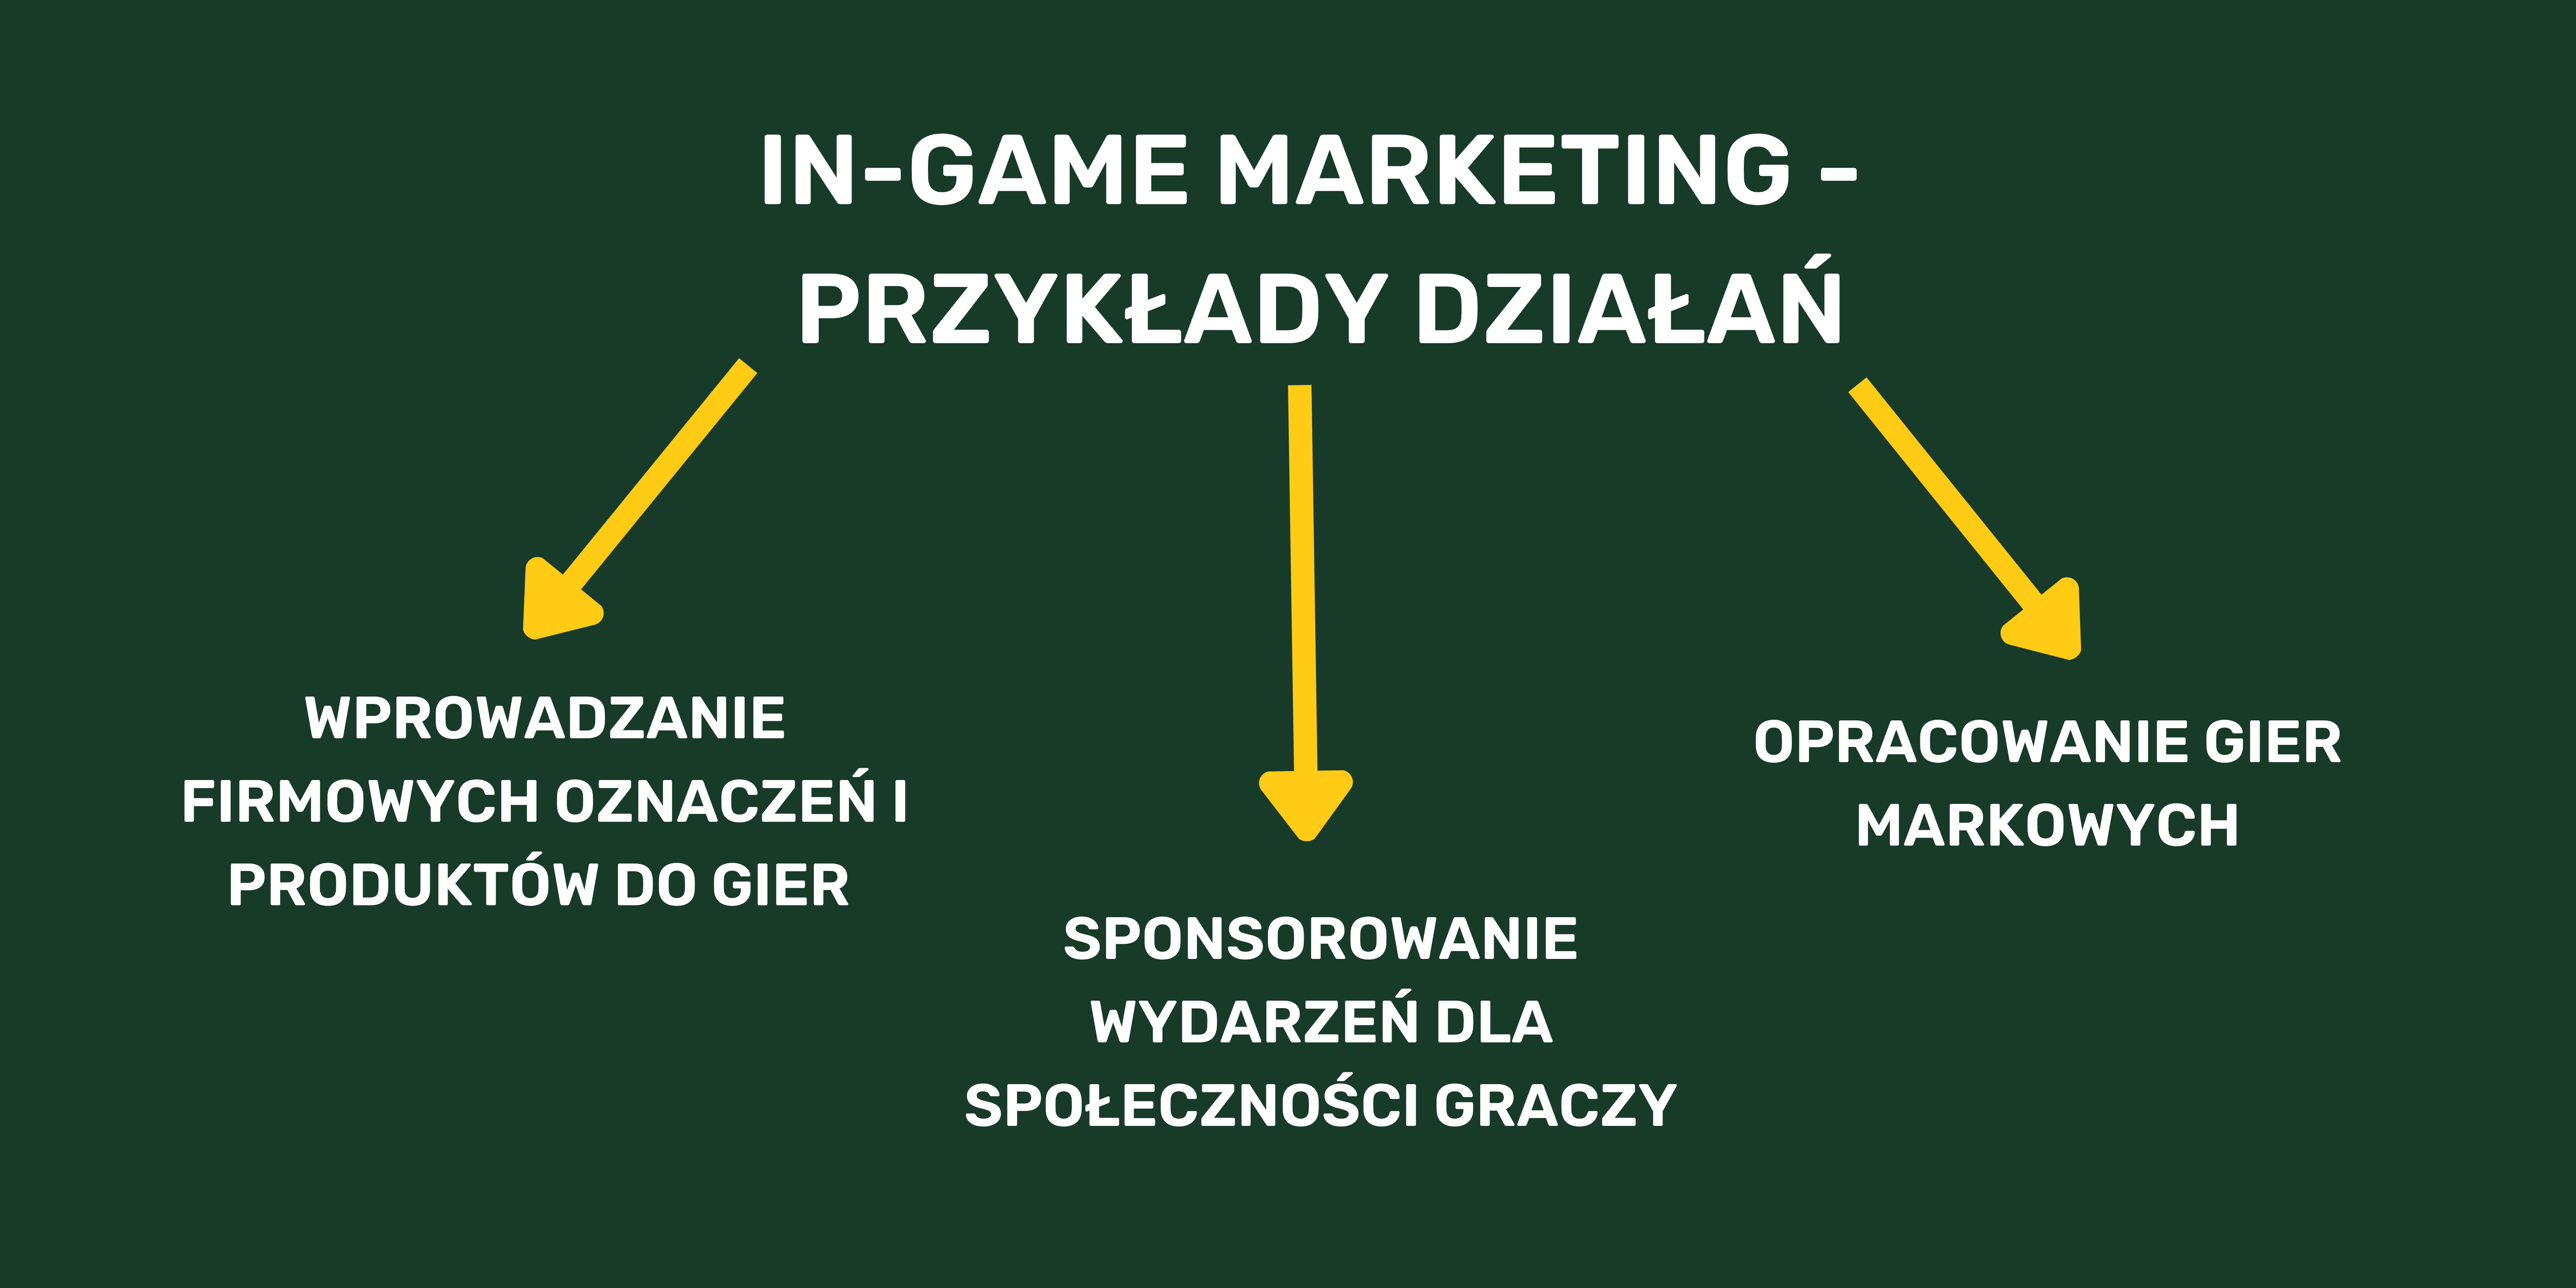 in-game marketing - przykłady działań